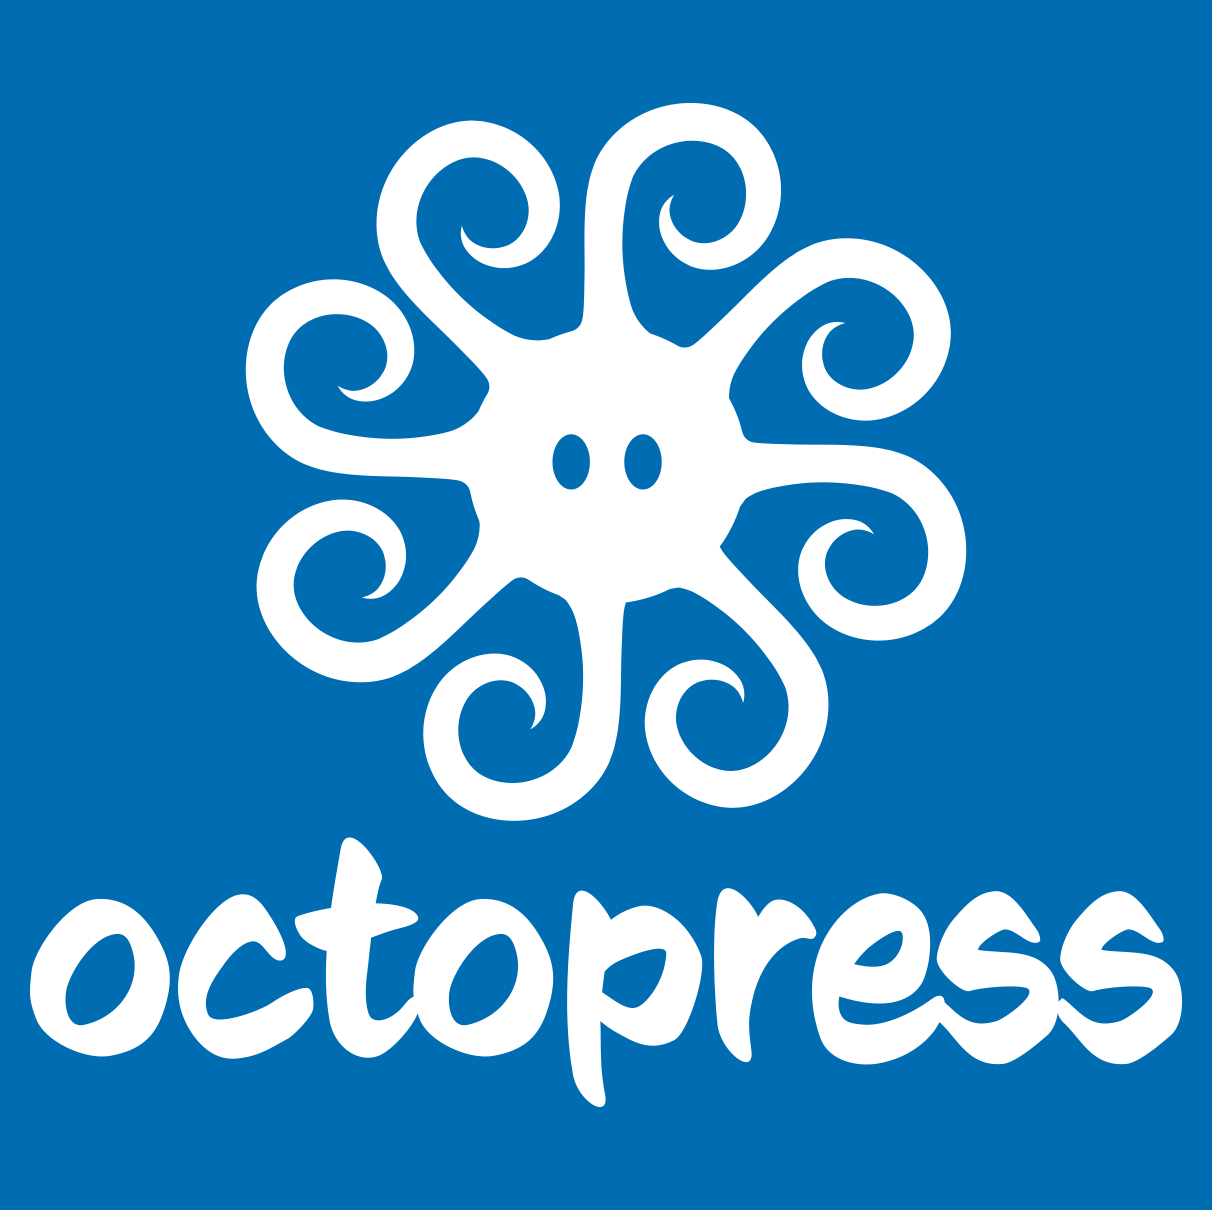 T-shirt octopress